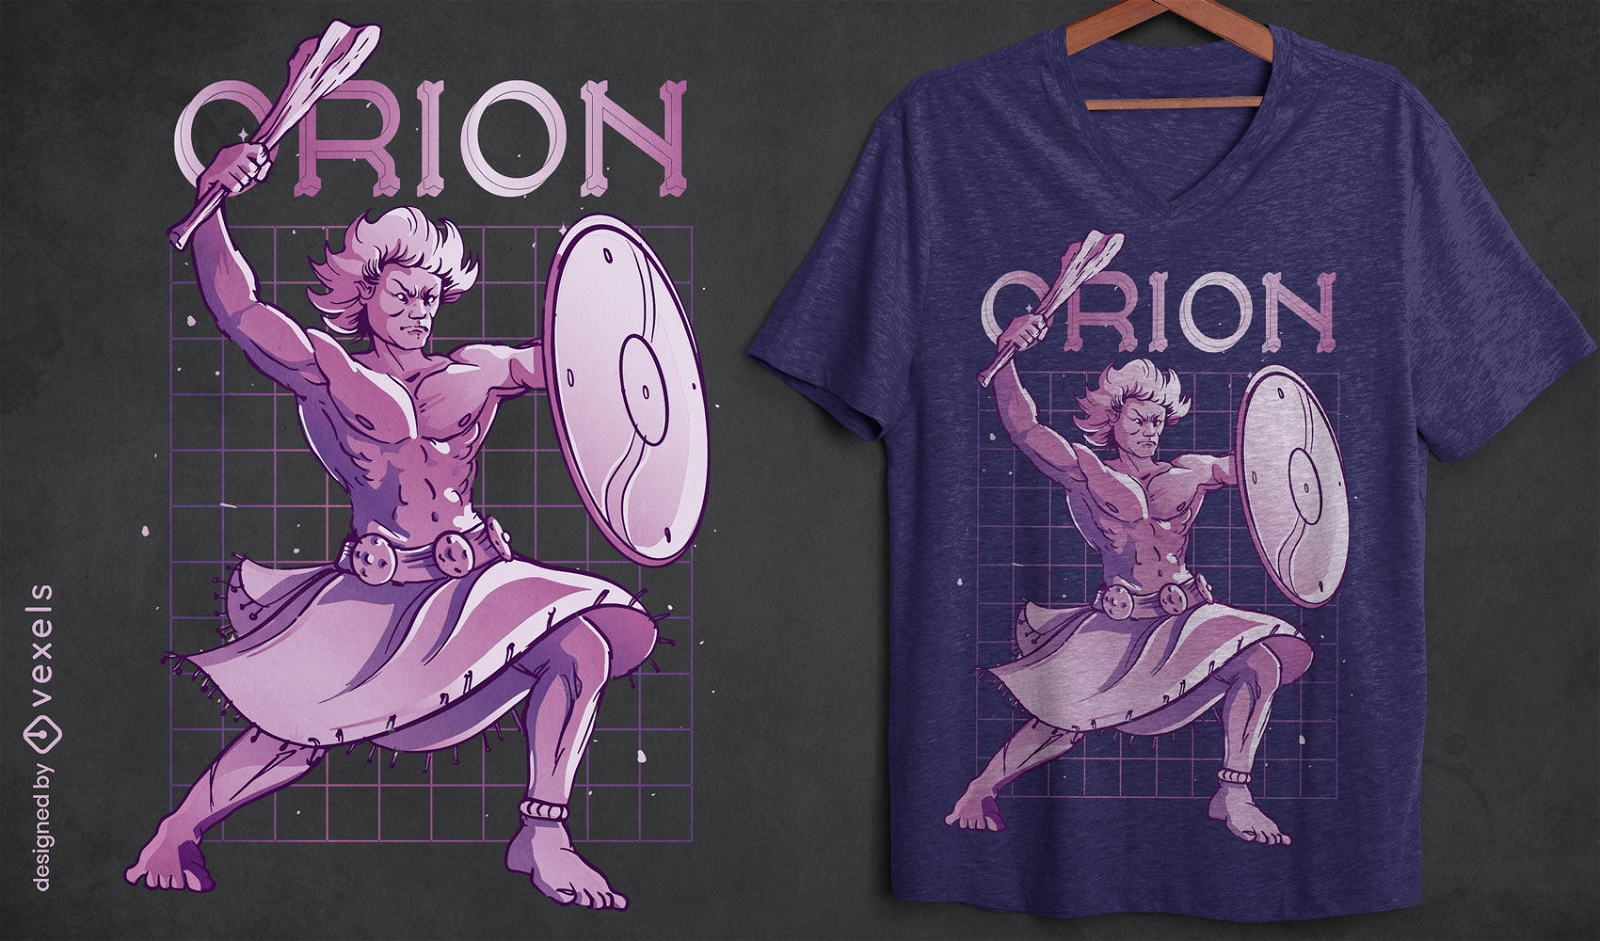 Orion greek mythology t-shirt design